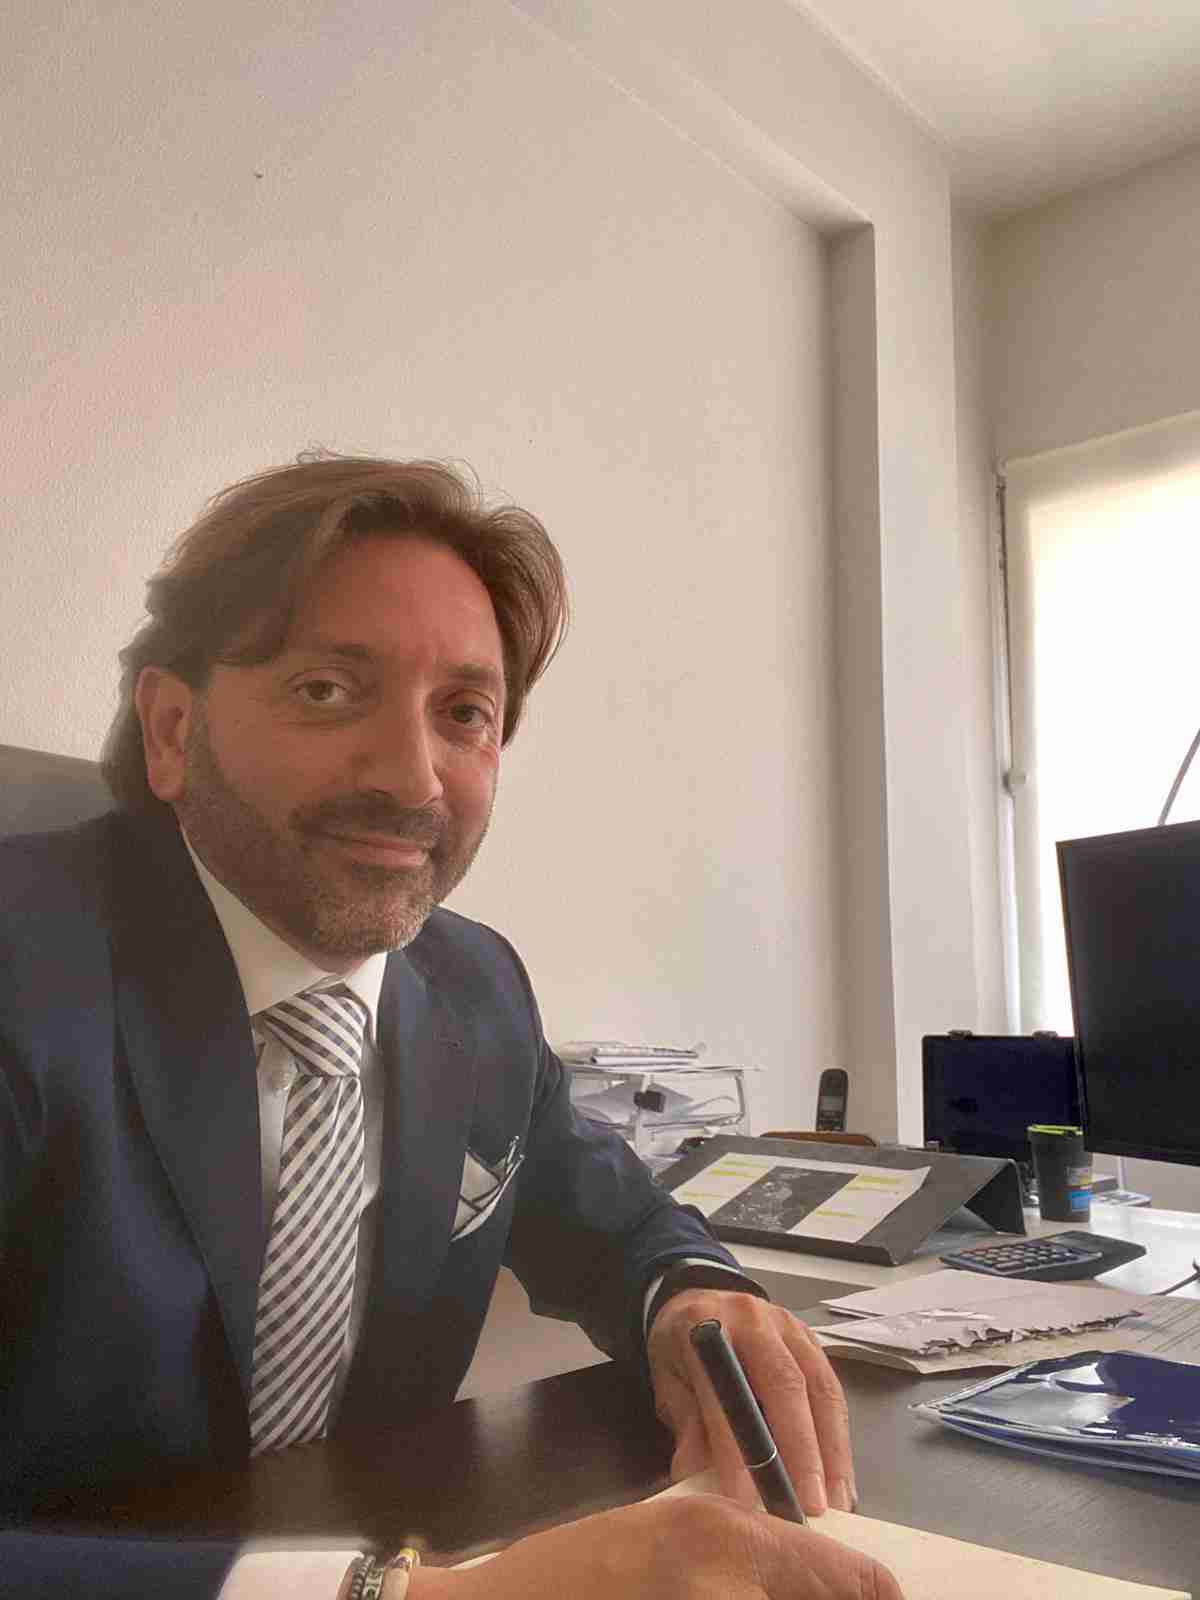 Mensa scolastica, Corrado Spataro risponde all’assessore Cappello: “Dichiarazioni infondate”